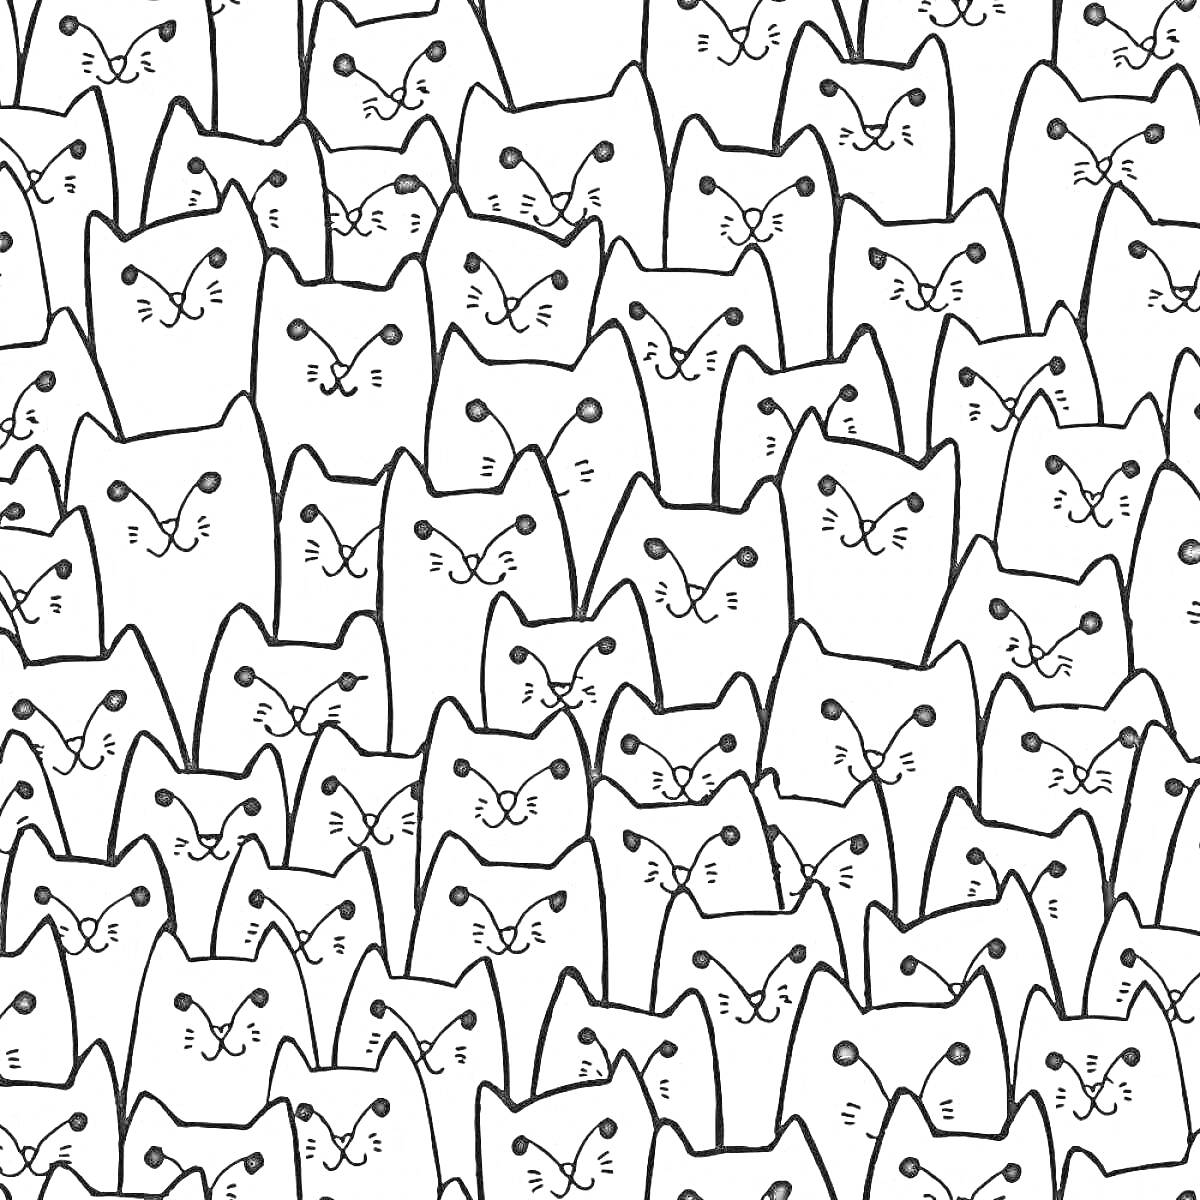 Раскраска Множество нарисованных мордочек котиков, повторяющихся по всему изображению